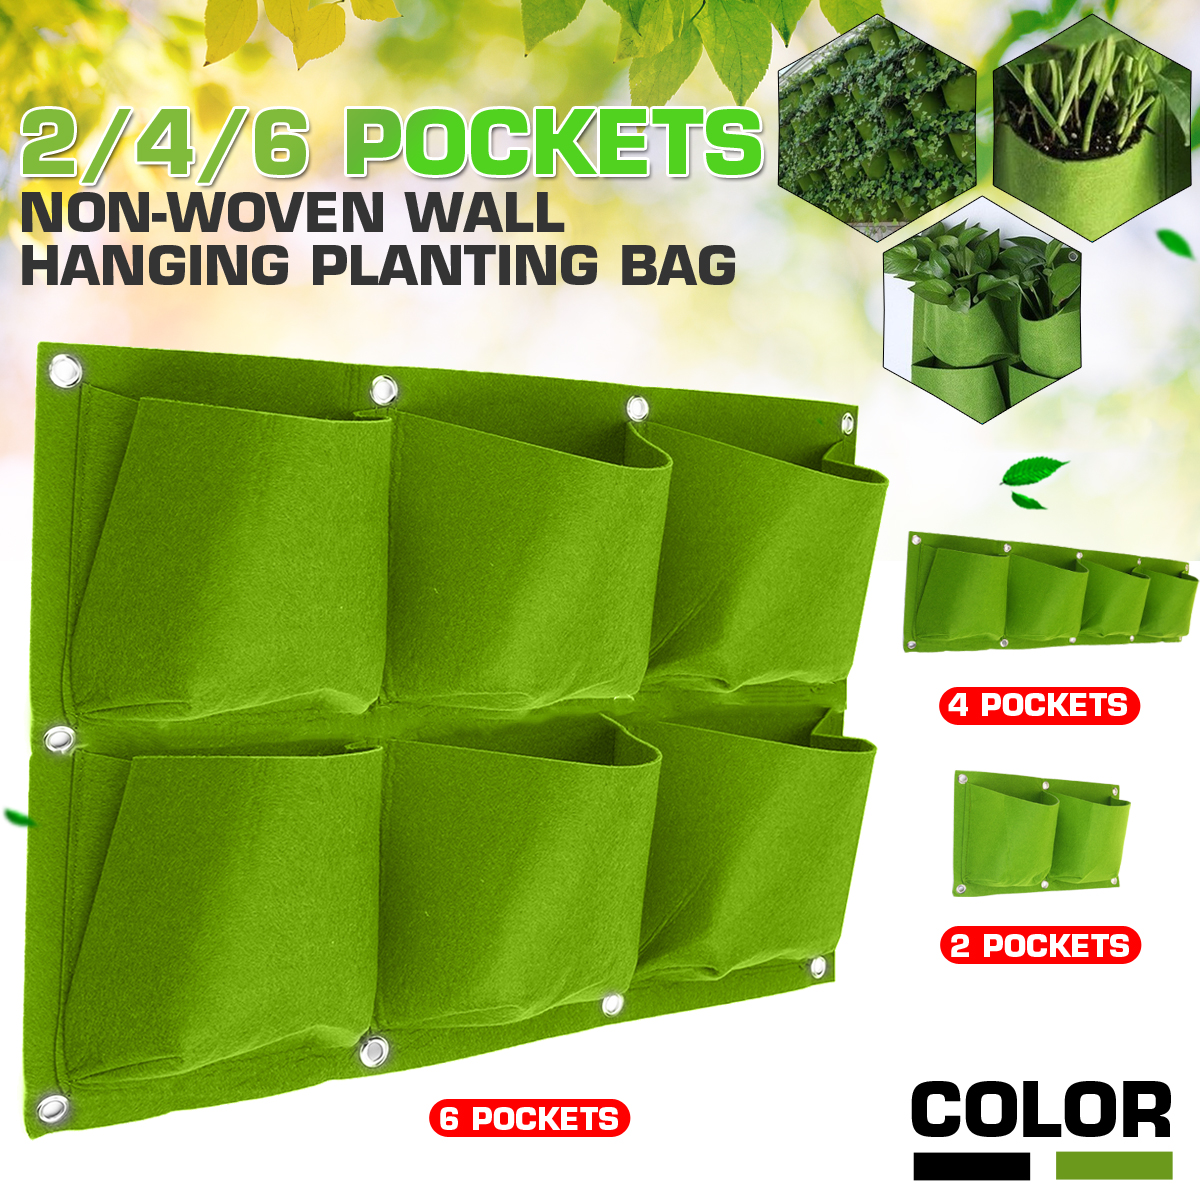 Multi-pocket-Wall-Hanging-Planting-Bag-Fabric-Grow-Bag-1702688-1